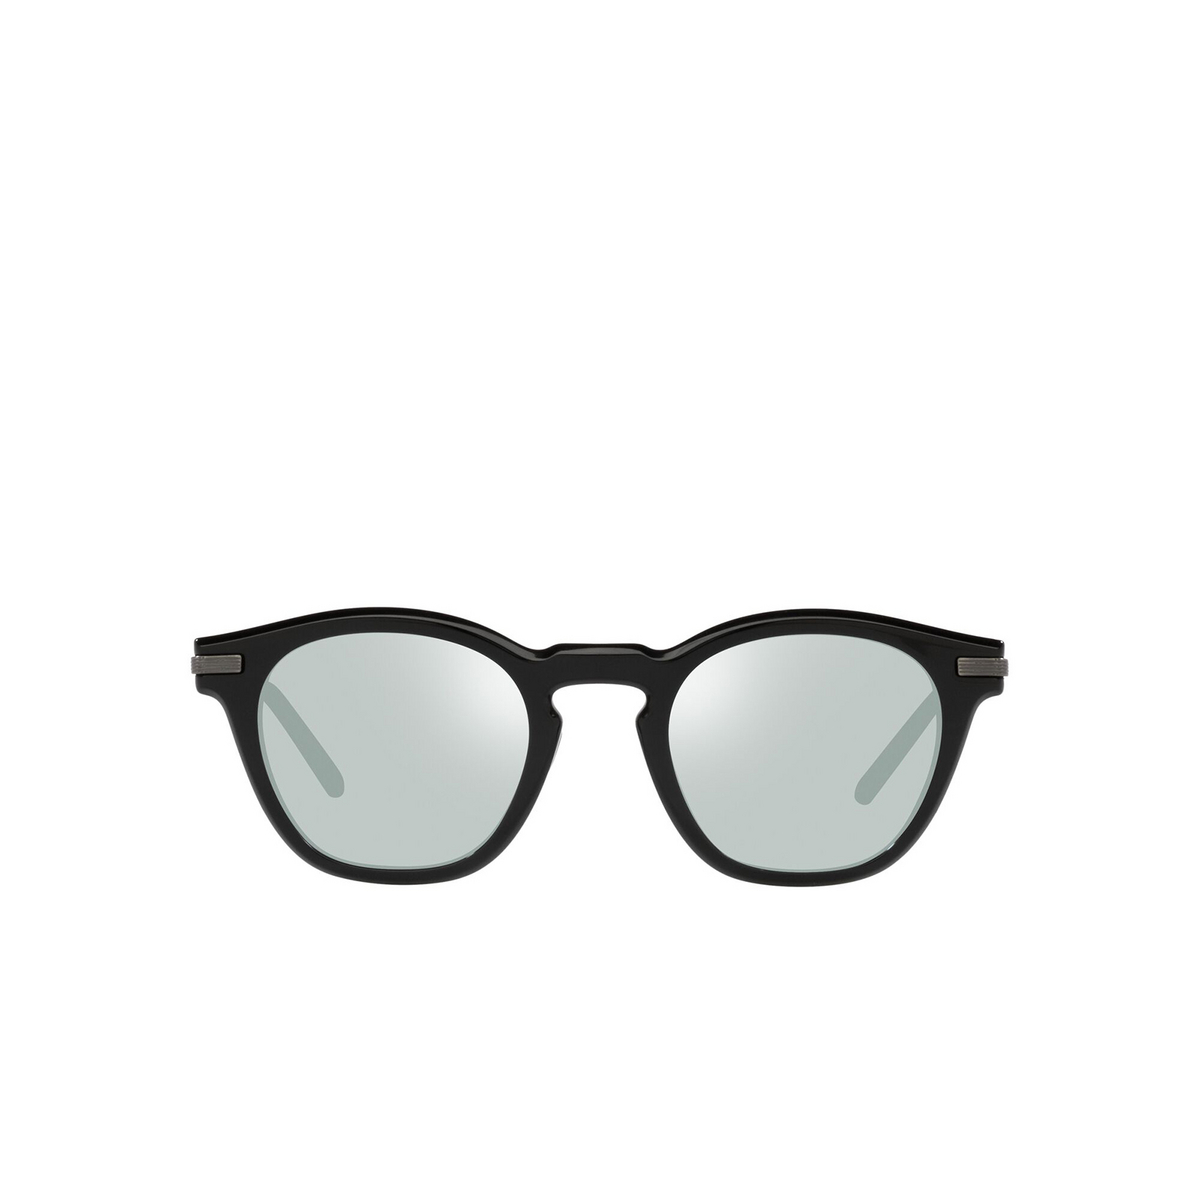 Oliver Peoples LEN Eyeglasses 1731 Black / Pewter - front view